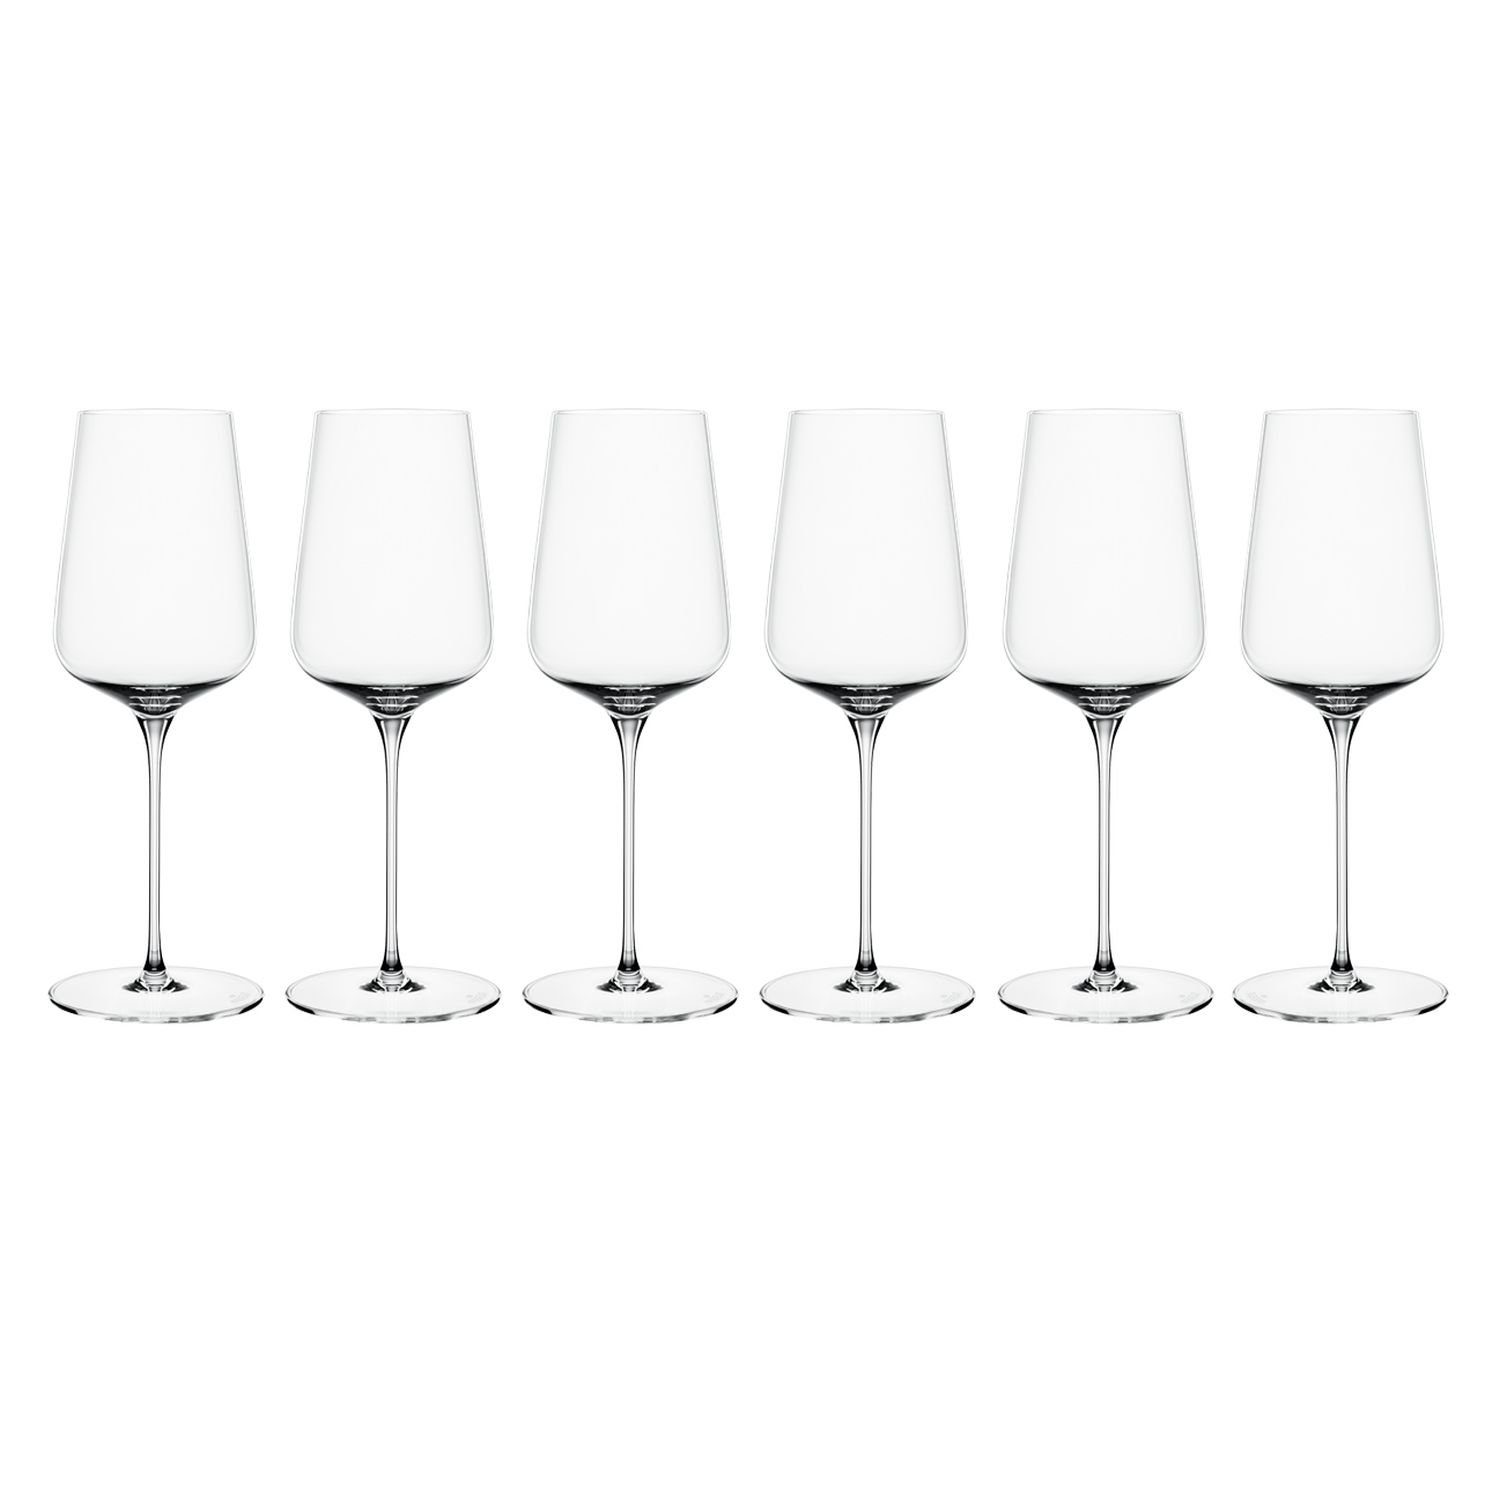 SPIEGELAU Weinglas Definition Weißweinglas 6er Set, Kristallglas